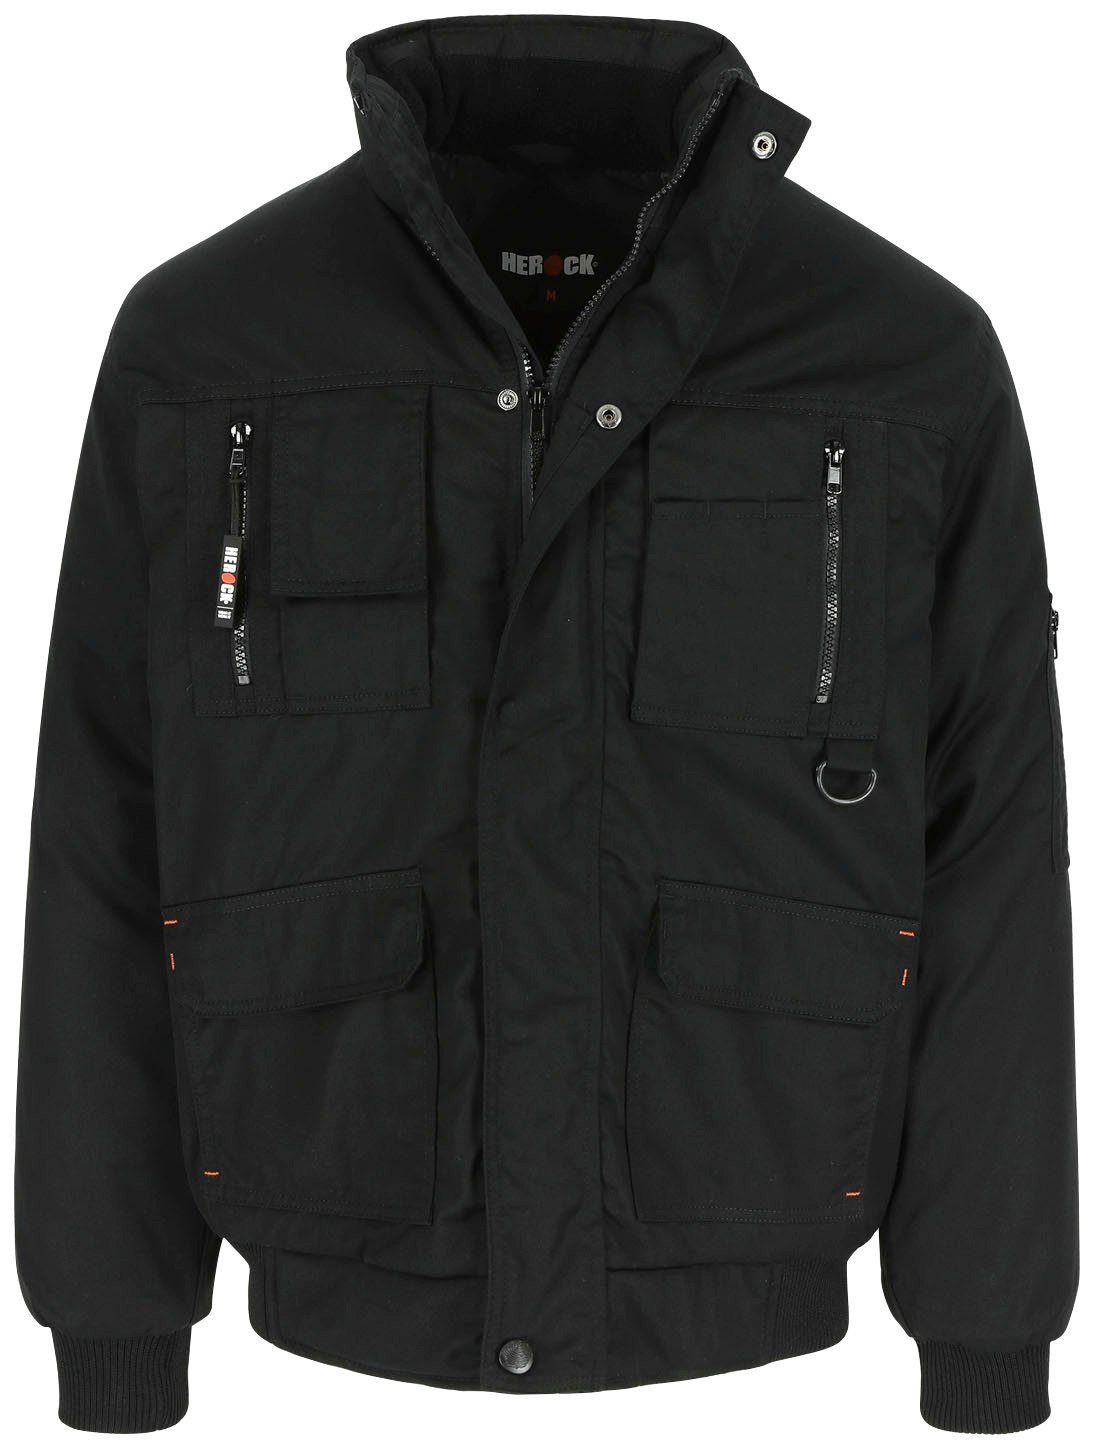 Herock Arbeitsjacke Typhon Jacke Wasserabweisend mit Fleece-Kragen, robust, viele Taschen, viele Farben schwarz